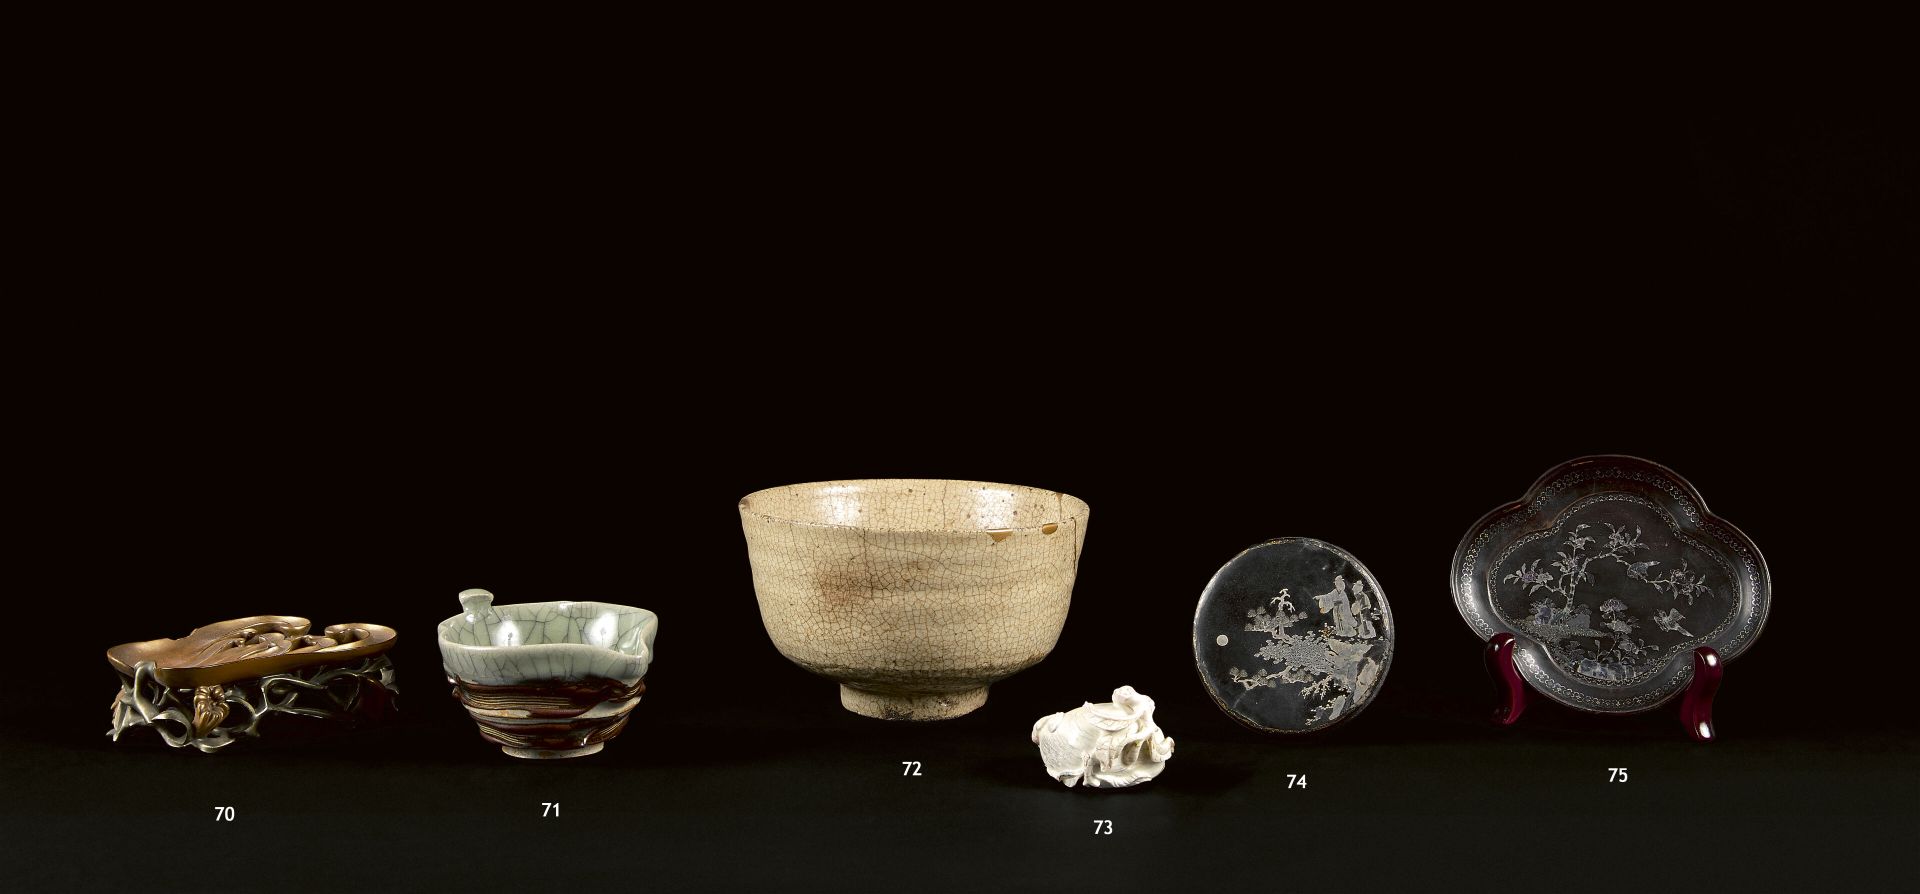 Null 日本 - 明治时期 (1868-1912)
一个炻器碗，有裂纹的青瓷釉和横向的棕色釉条纹，唇部有一个纽扣形成一个手柄。在背面，有一个印章。
(芯片)。&hellip;